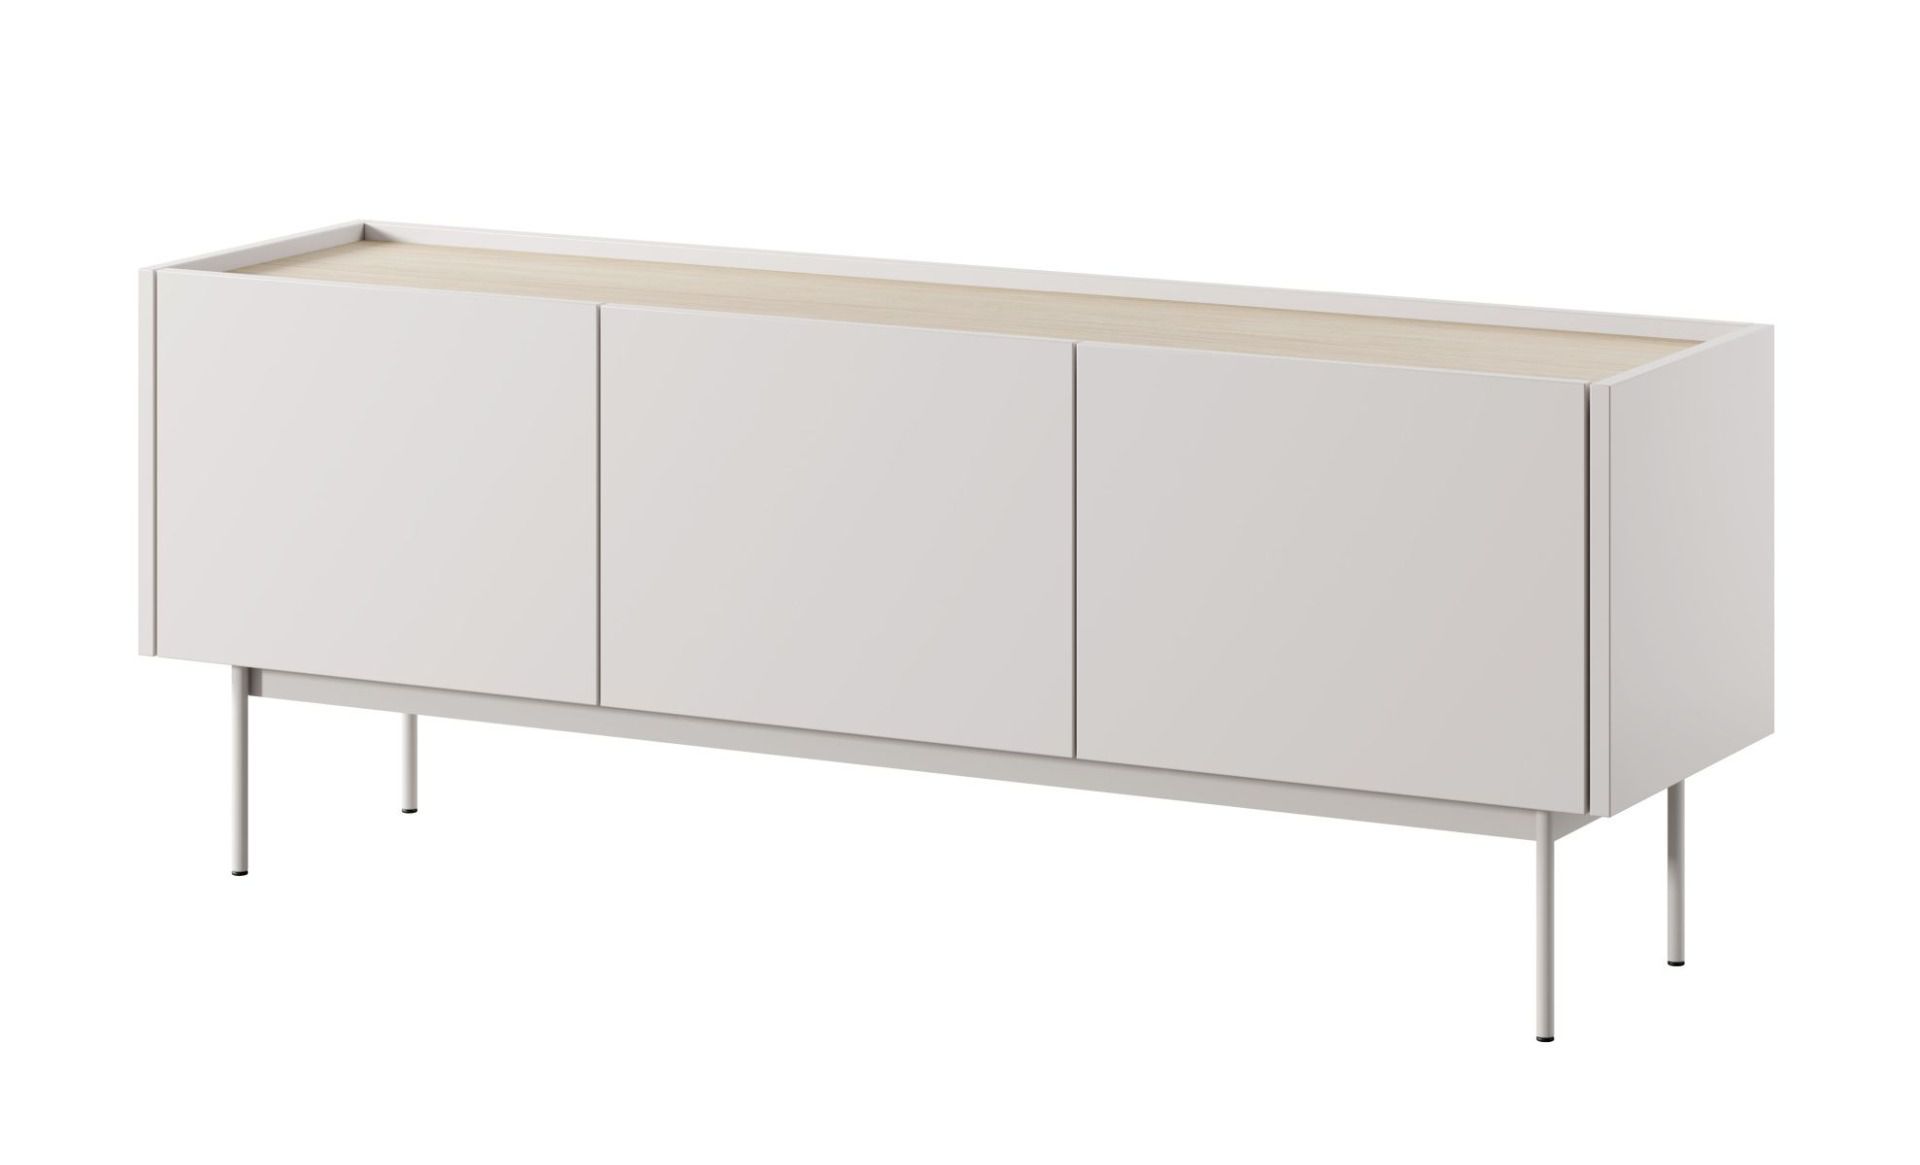 TV-Unterschrank Cascob 01, Kaschmir / Eiche, 55 x 144 x 37 cm, mit 3 Fächern und Soft Close System, robust und stabil, hochwertige Materialien